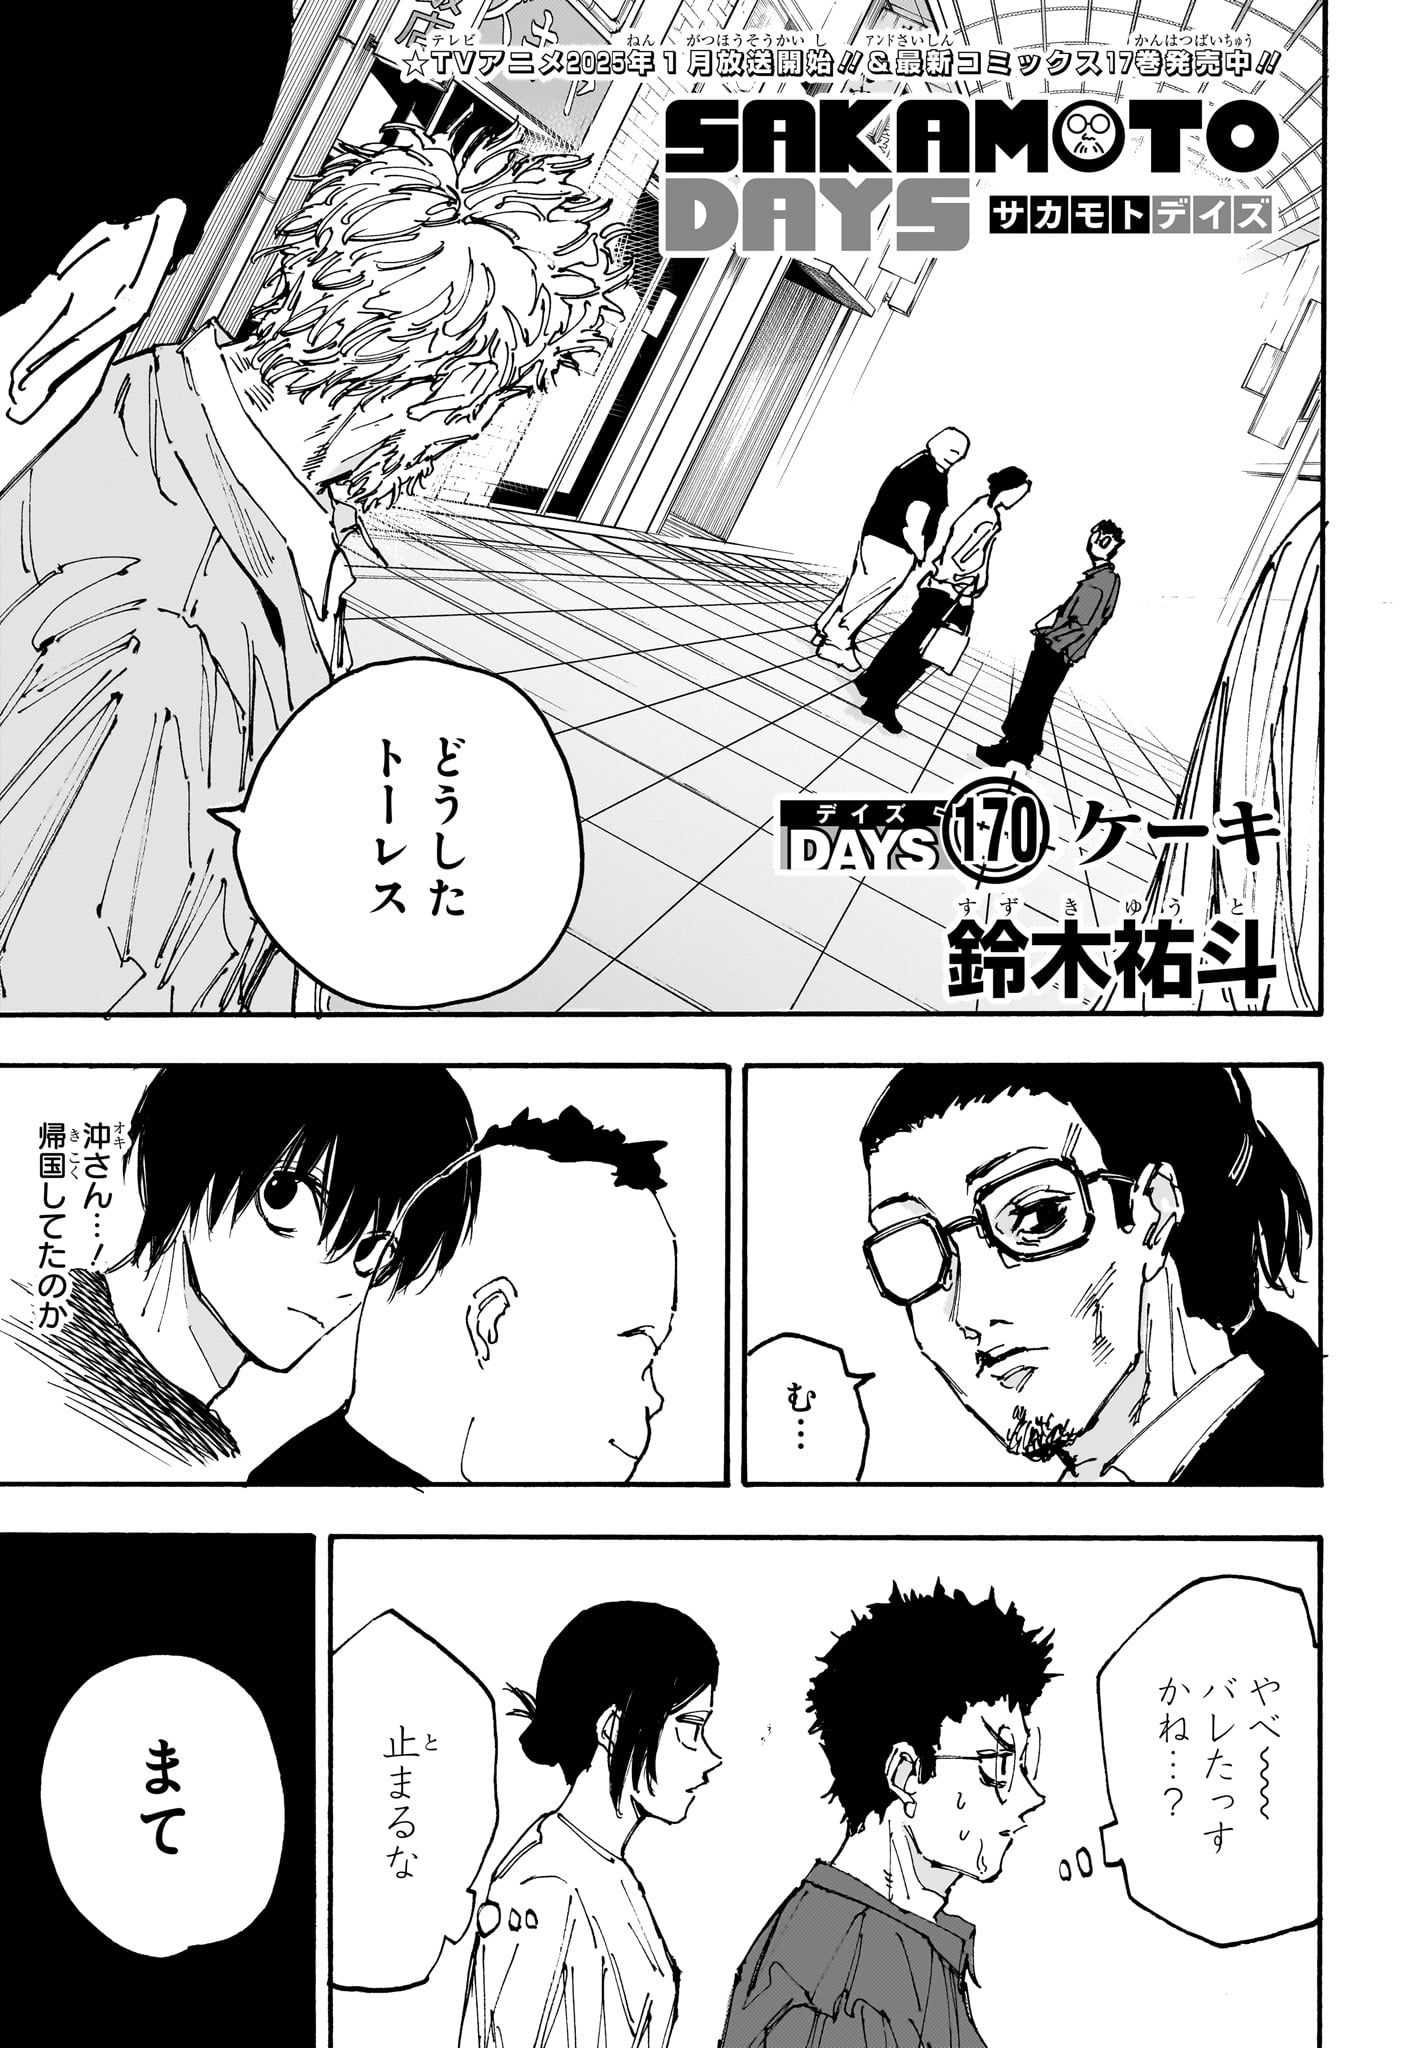 Sakamoto Days - Chapter 170 - Page 1